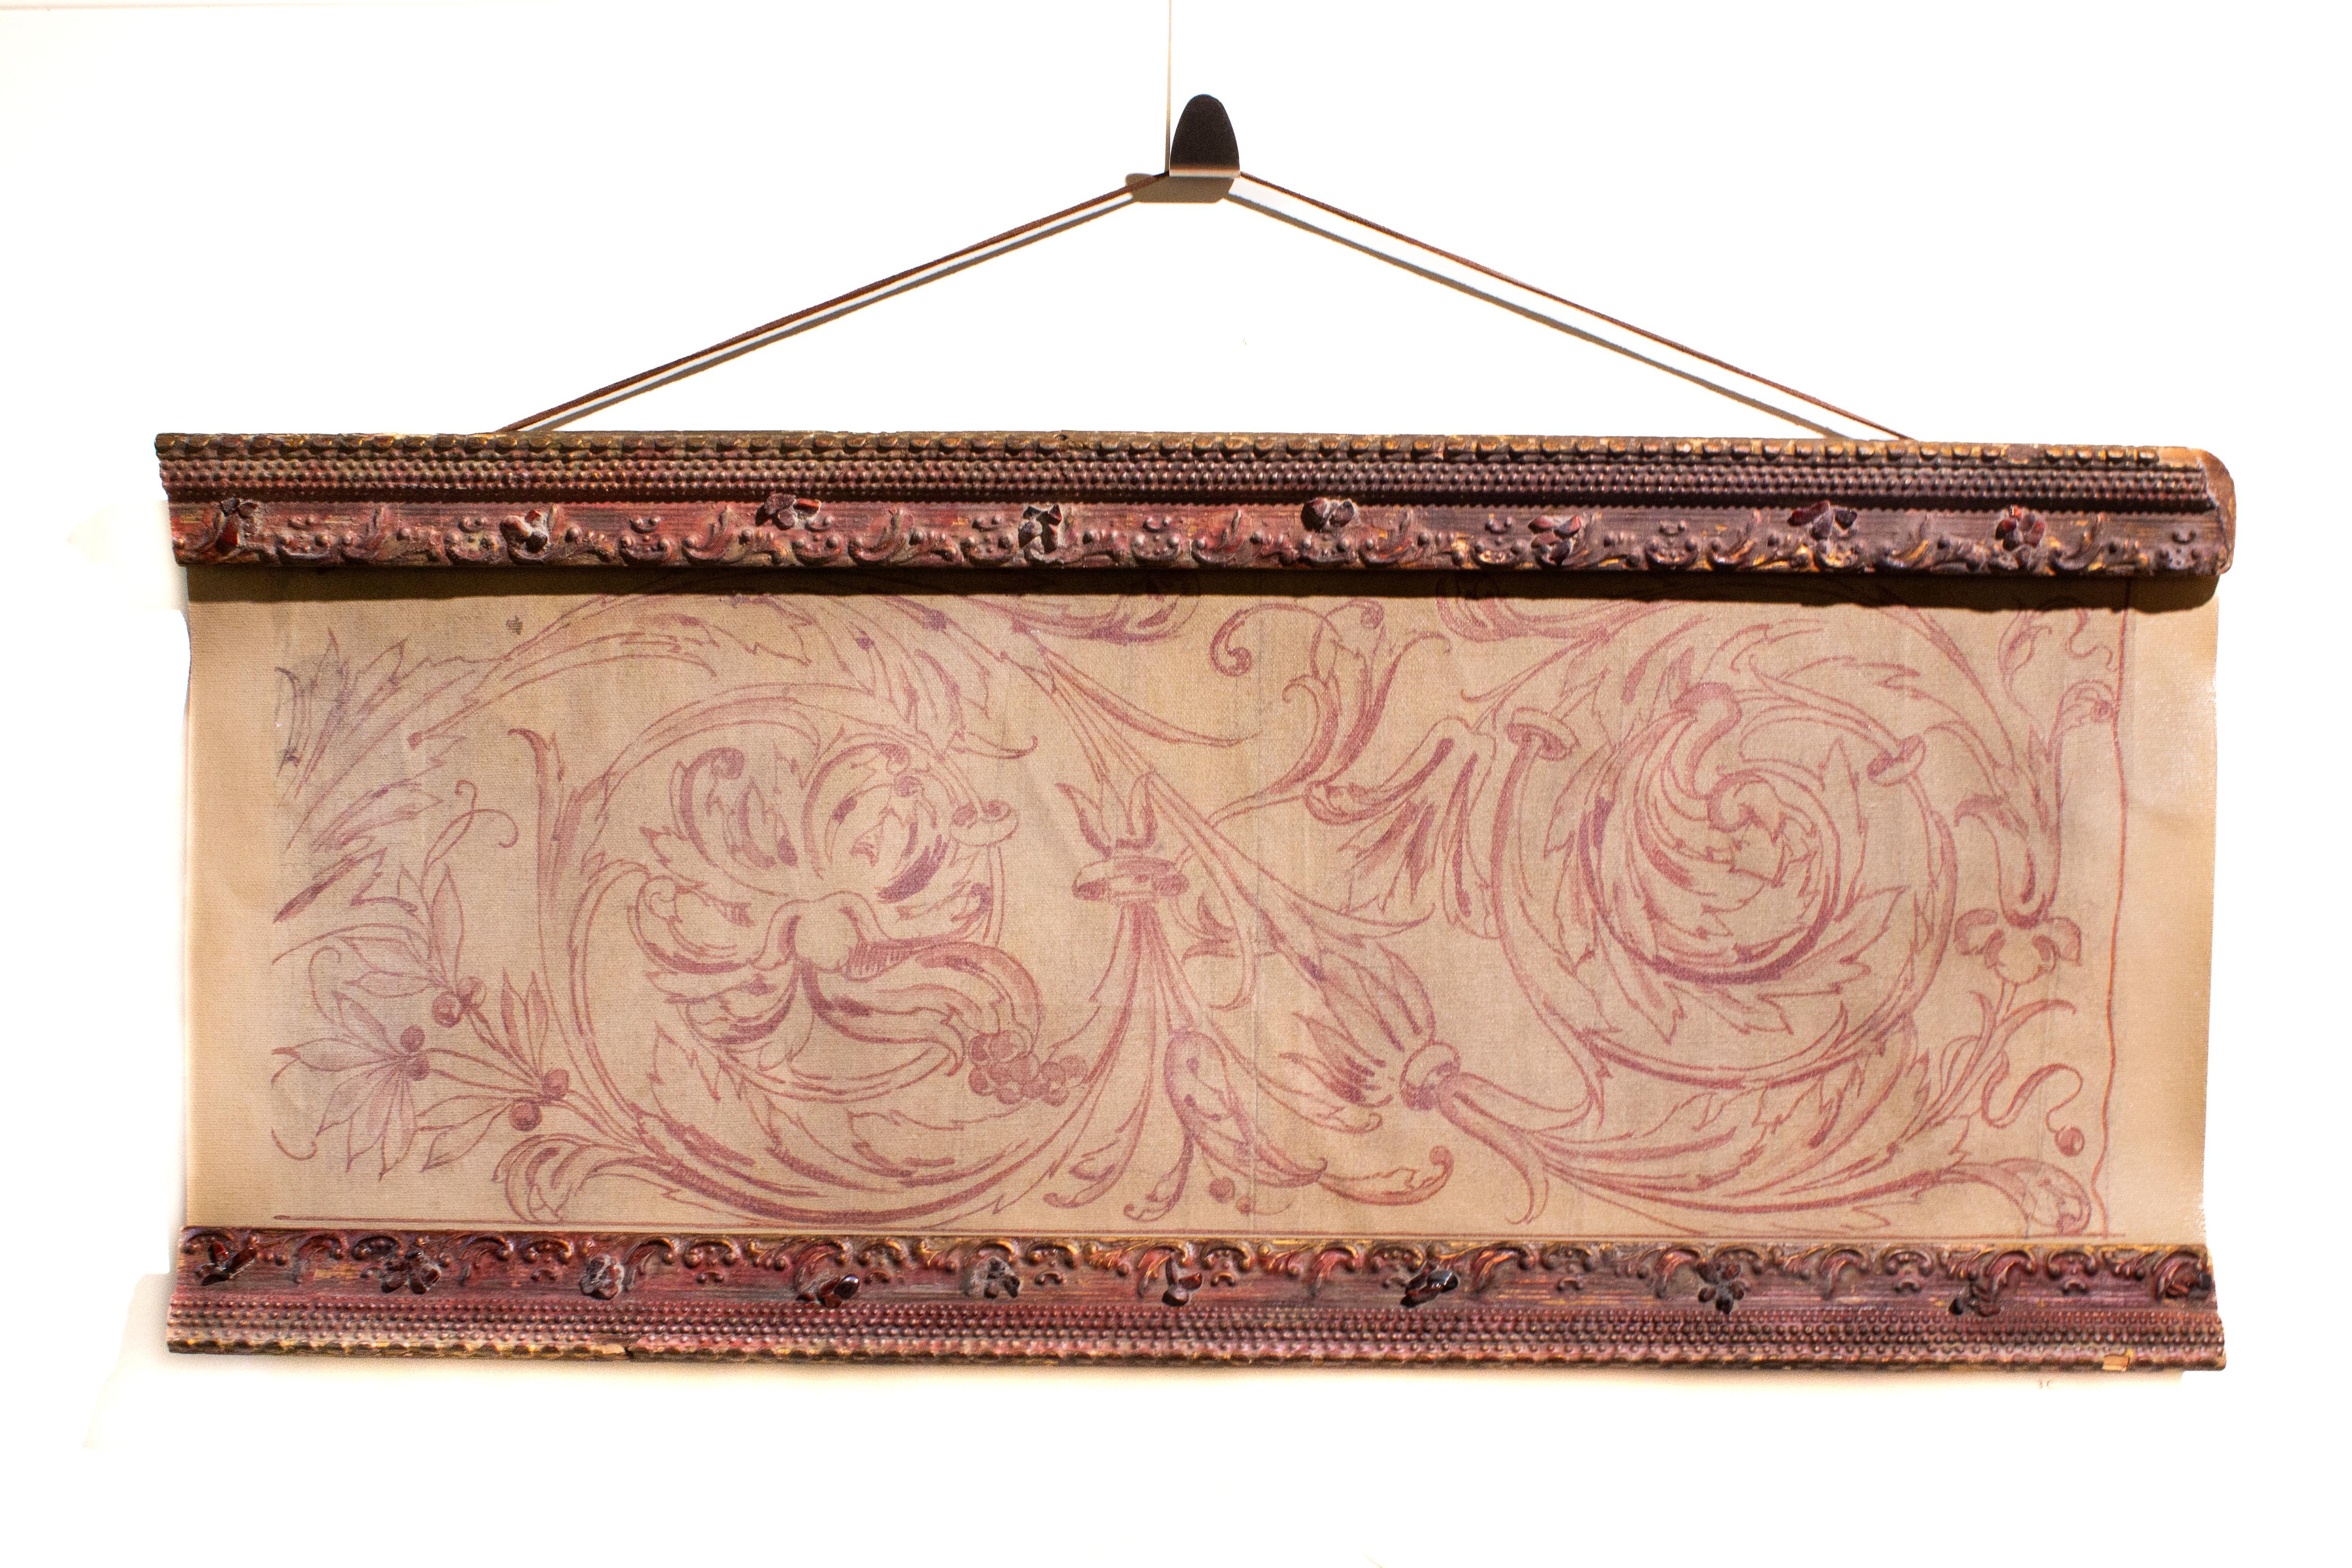 Italienisches Spolvero-Muster aus dem 18. Jahrhundert, gedruckt auf Leinwand, gerahmt mit einem passenden antiken roten Rahmen und verziert mit polierten Granaten und roten Rubinsteinen.

Spolvero ist eine künstlerische Methode zur Übertragung eines